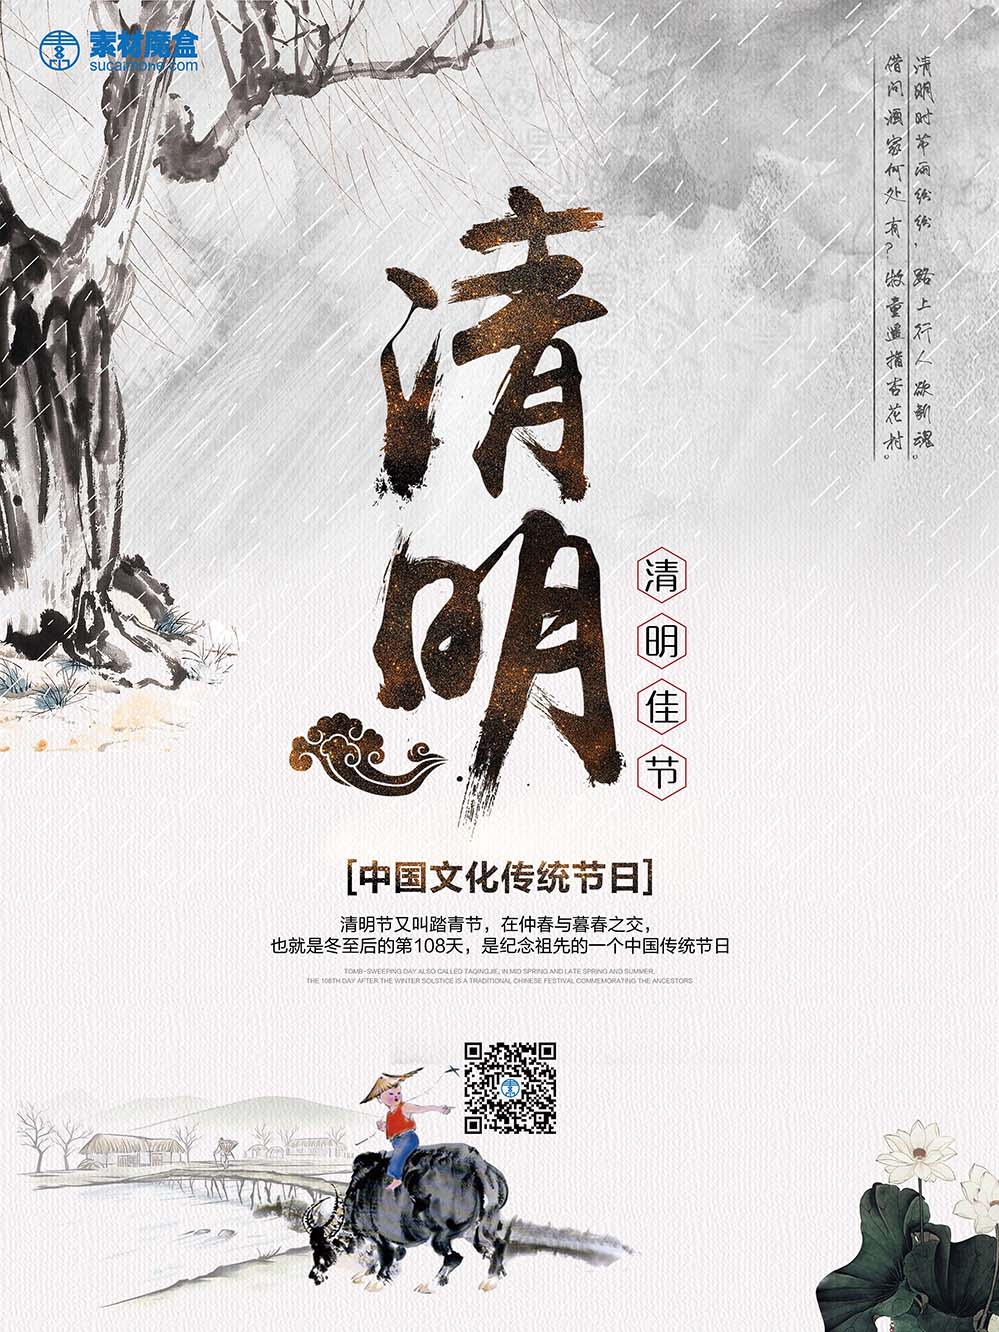 中国文化传统节日清明节水墨风格海报PSD源文件